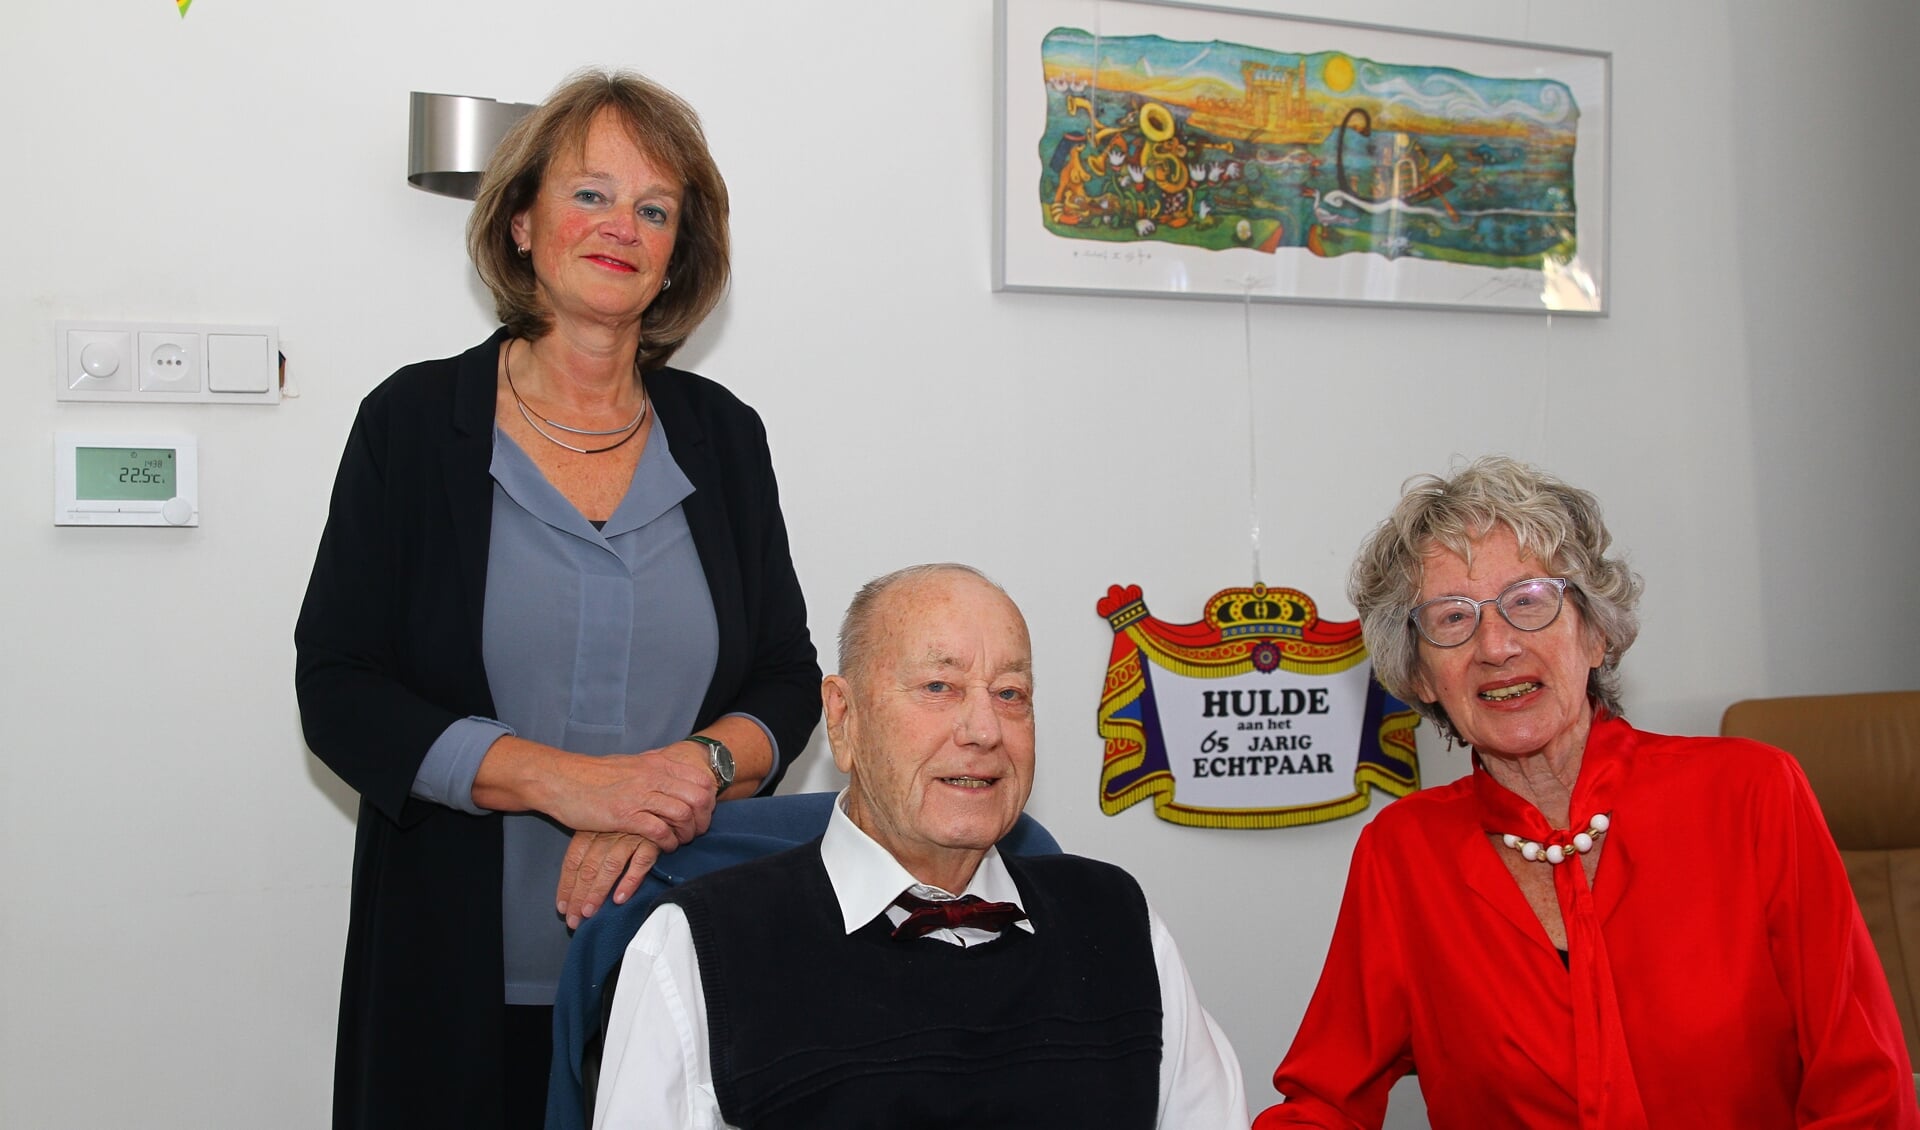 De geboren Amsterdammers Han en Rita Greve wonen al 47 jaar in Lisse en genoten van het burgemeestersbezoek.